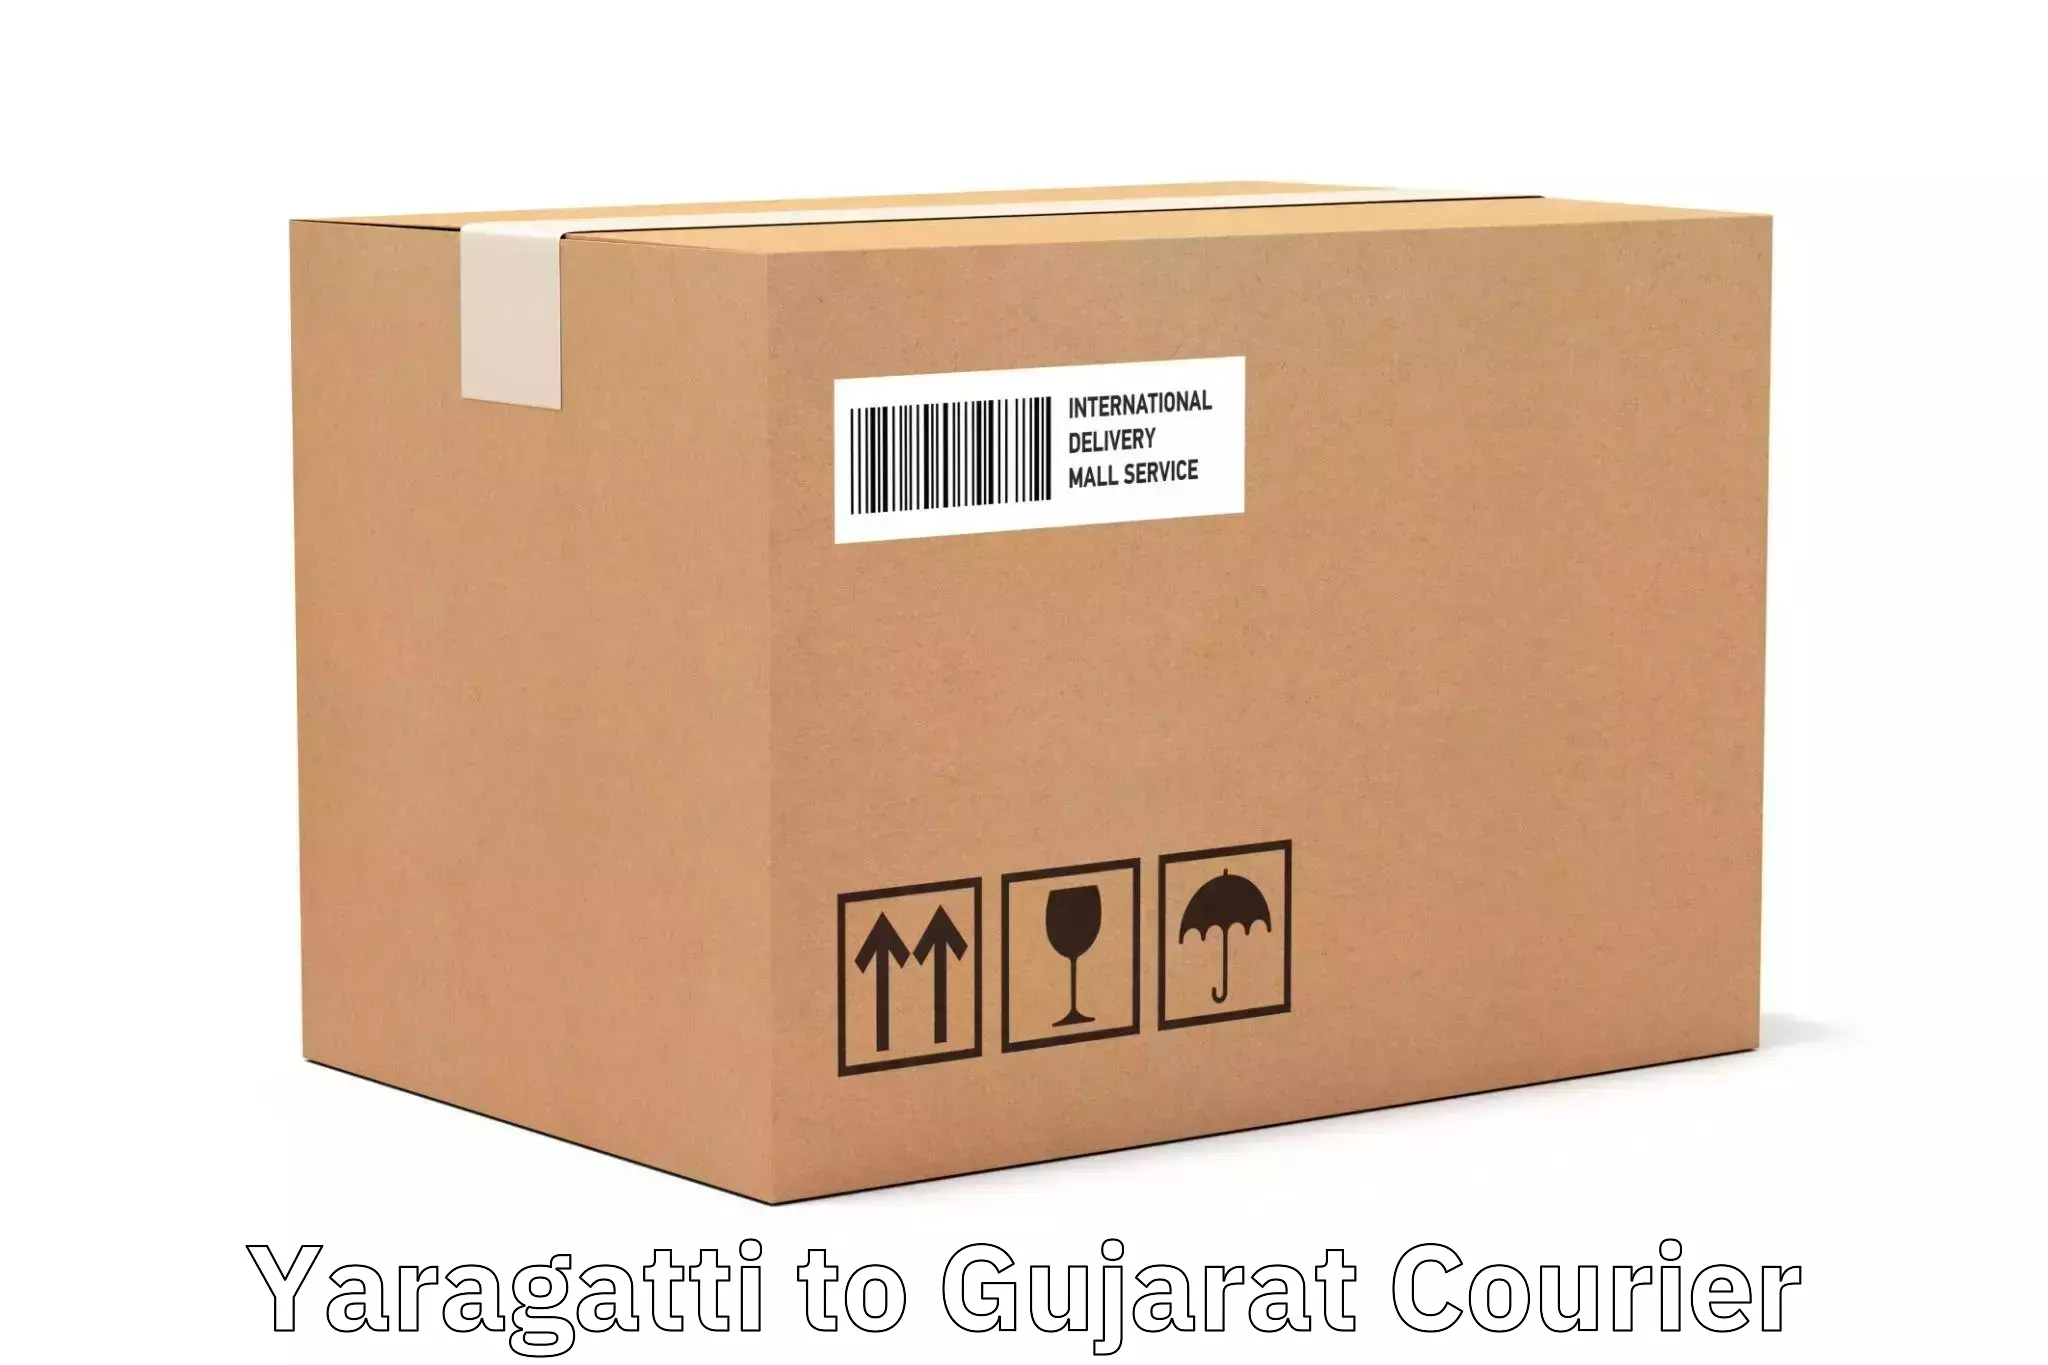 Seamless shipping experience in Yaragatti to Gujarat